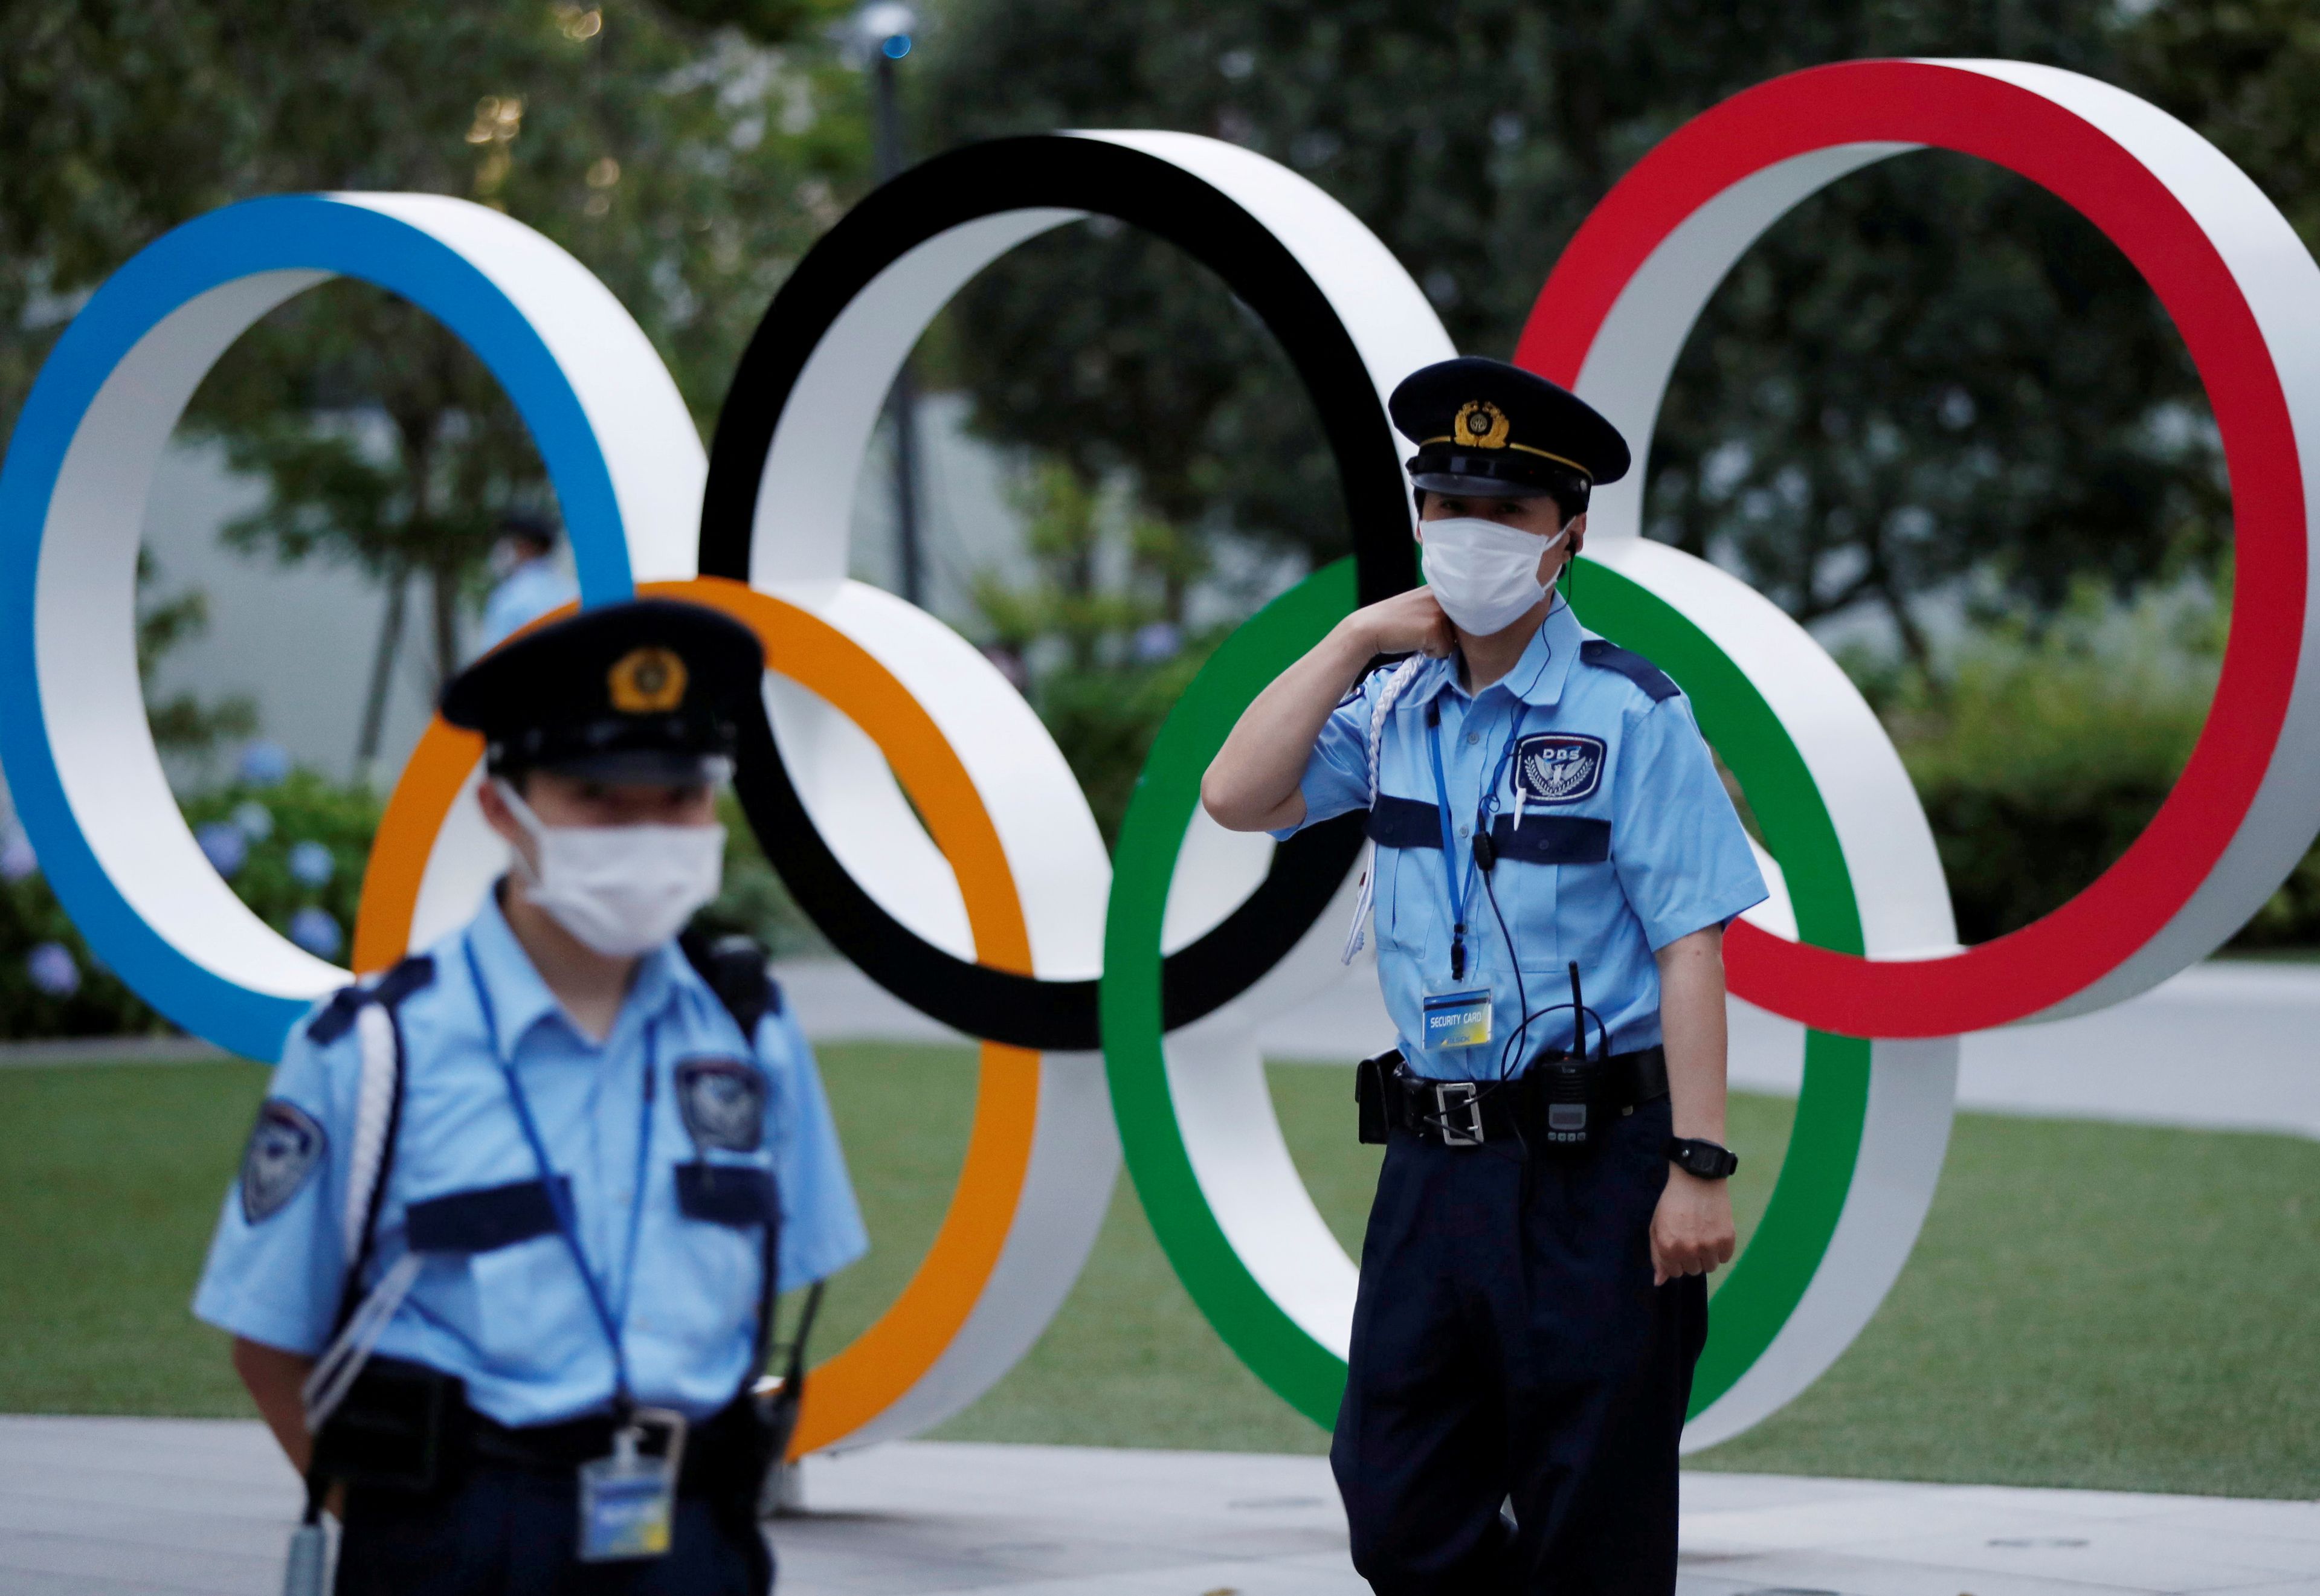 Juegos olimpicos tokio seguridad logo